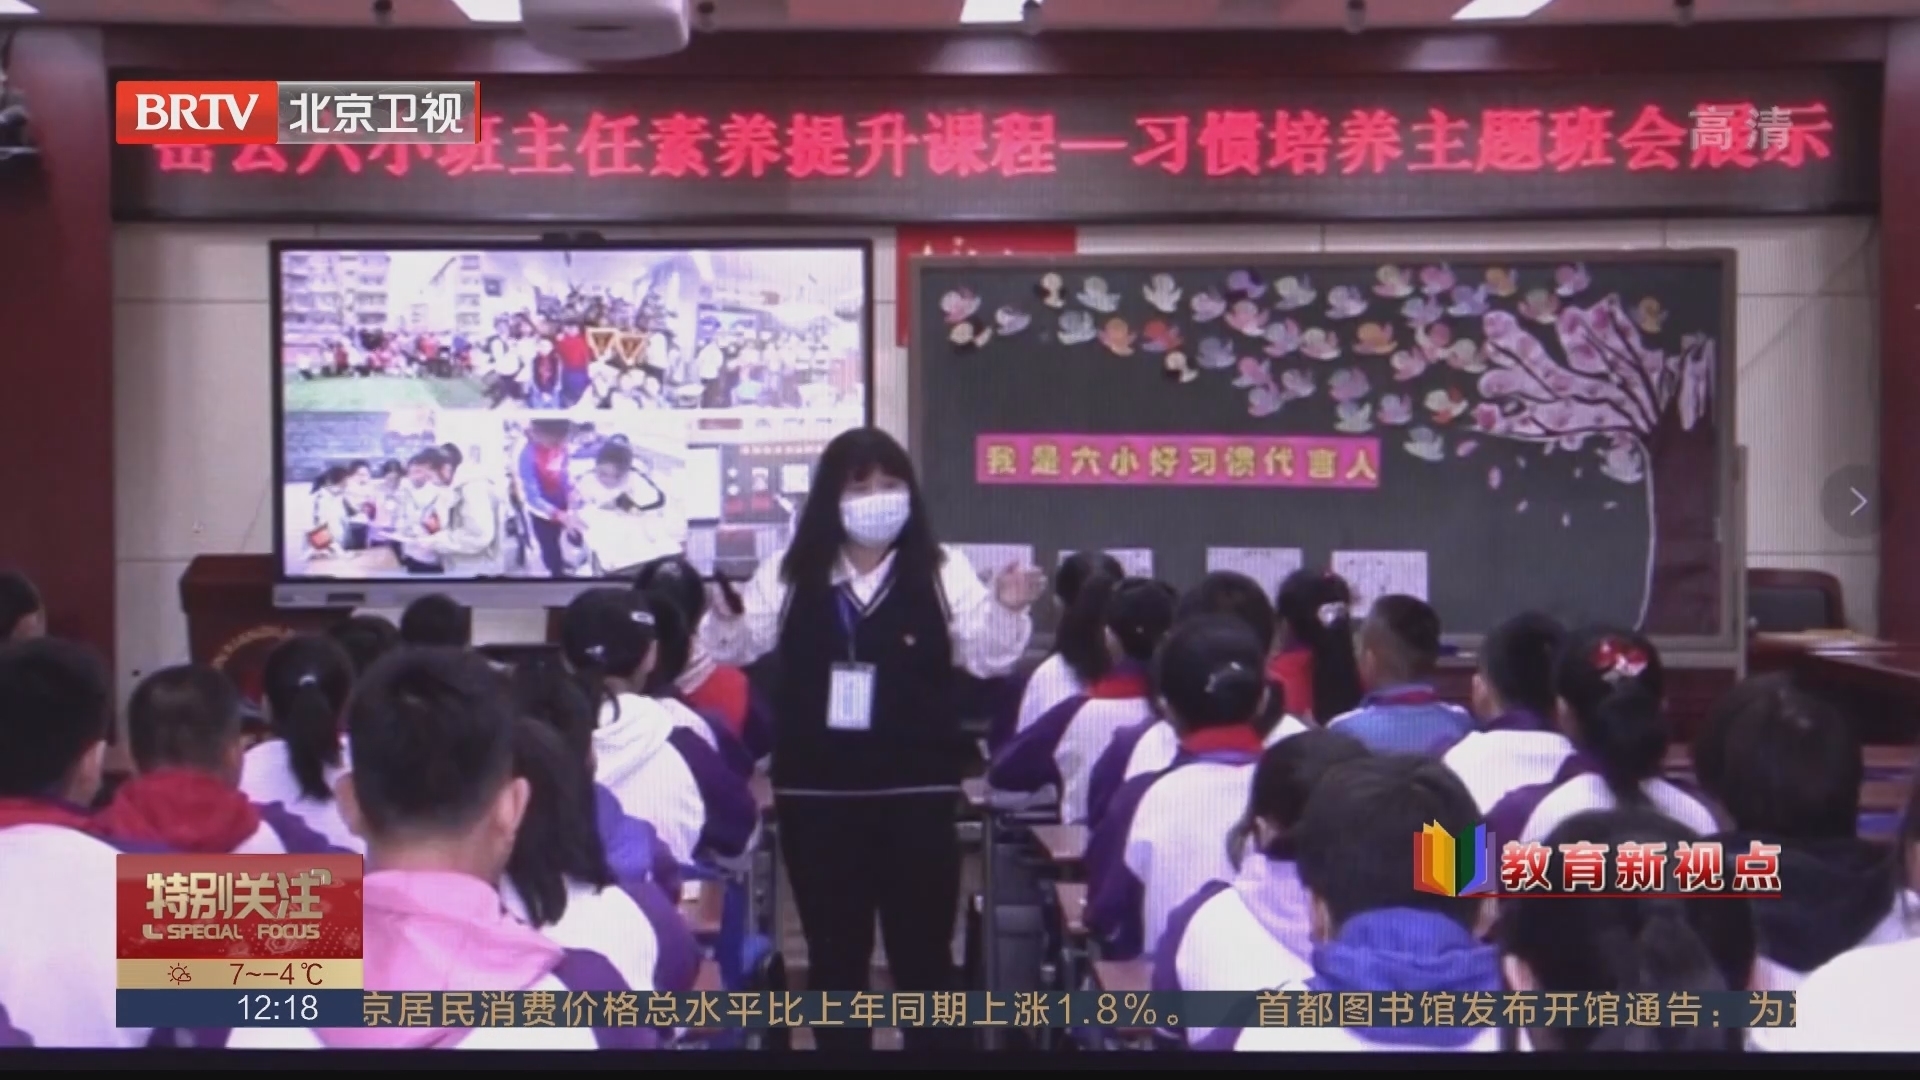 教育新视点 打造学习共同体 北京启动中小学教师开放型在线研修计划